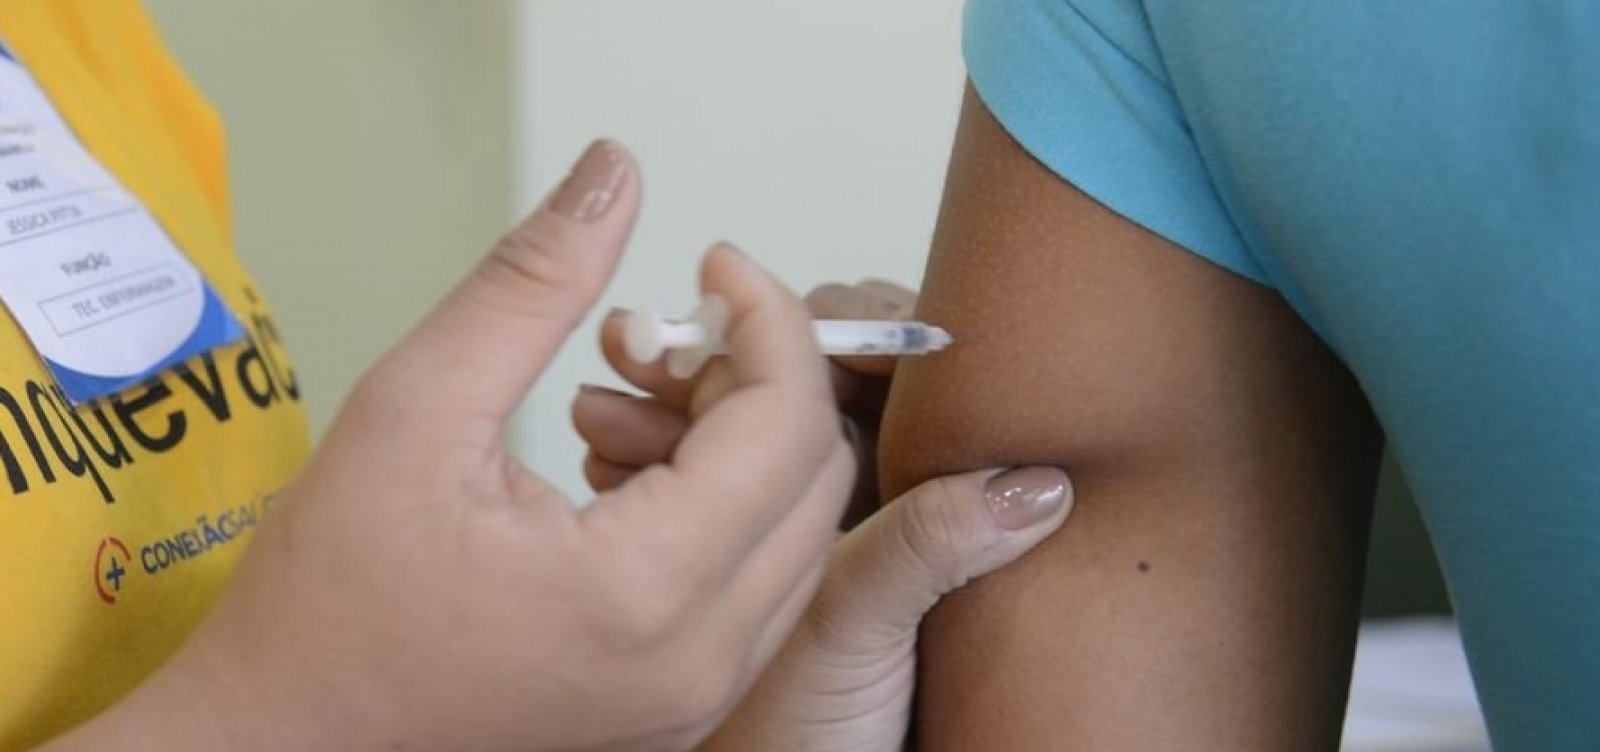 Postos de saúde intensificam vacinação contra febre amarela em Salvador